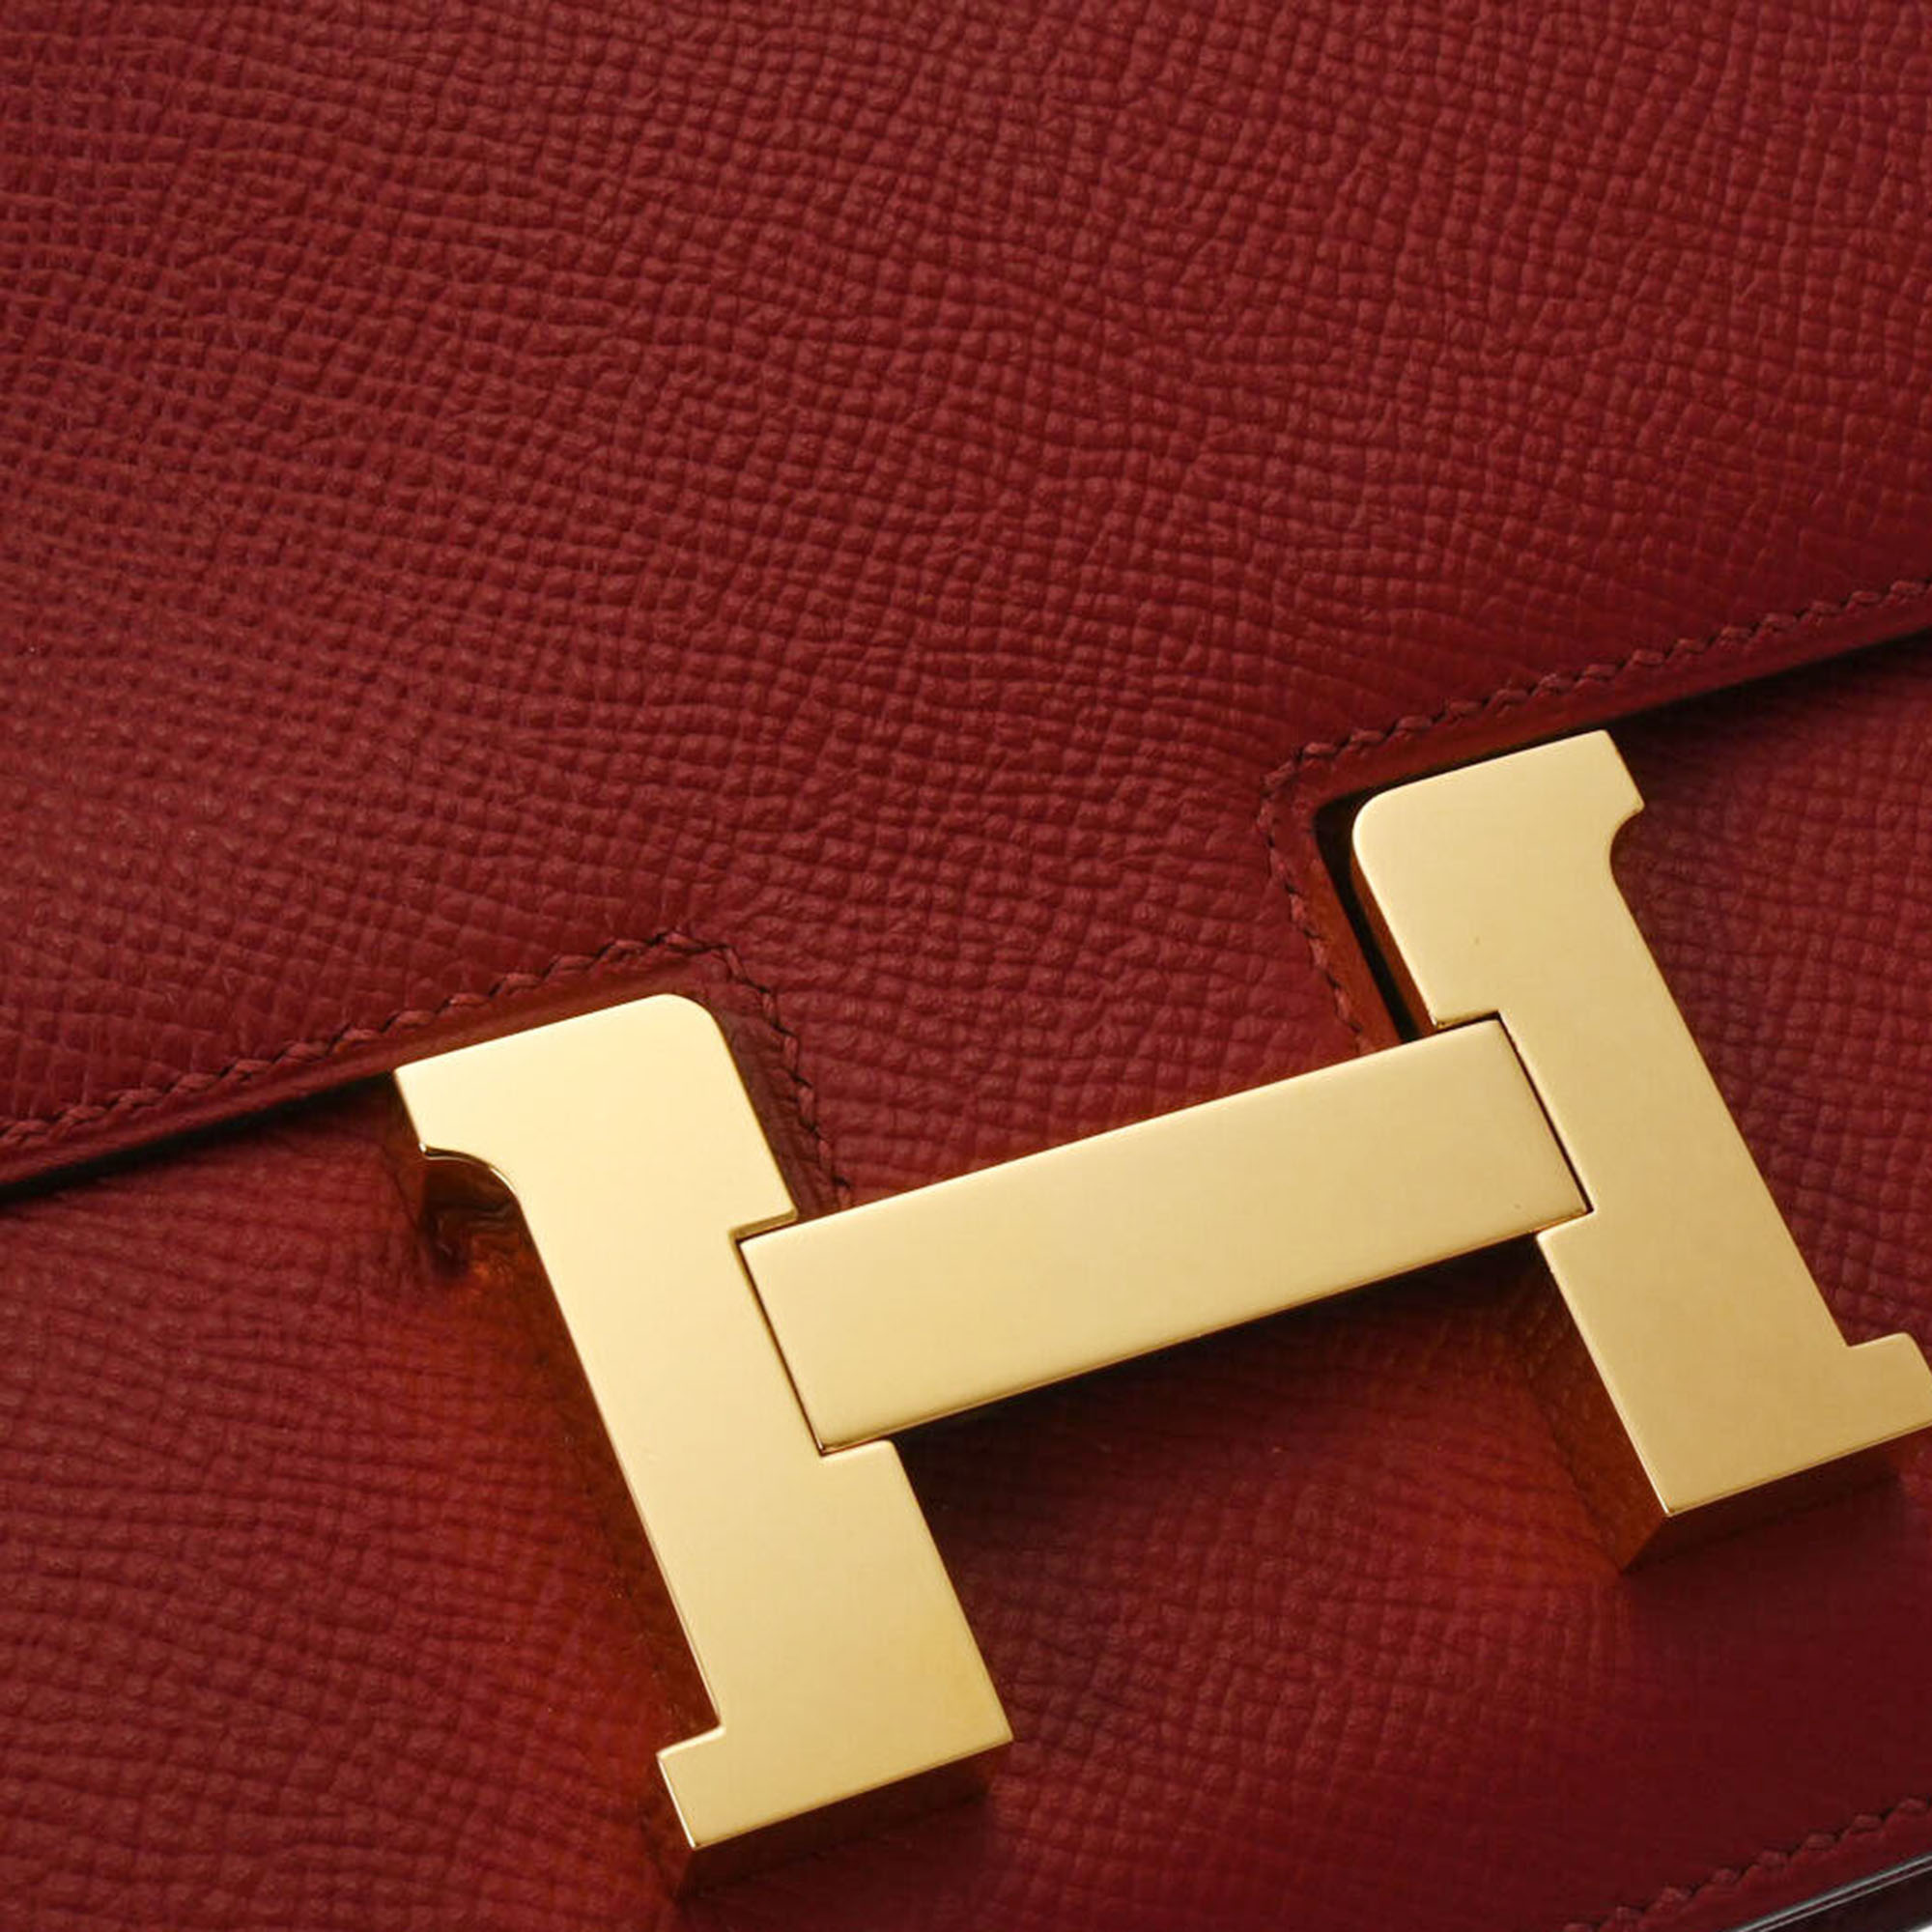 Hermes Red Epsom Leather Constance Mini 18 Shoulder Bag